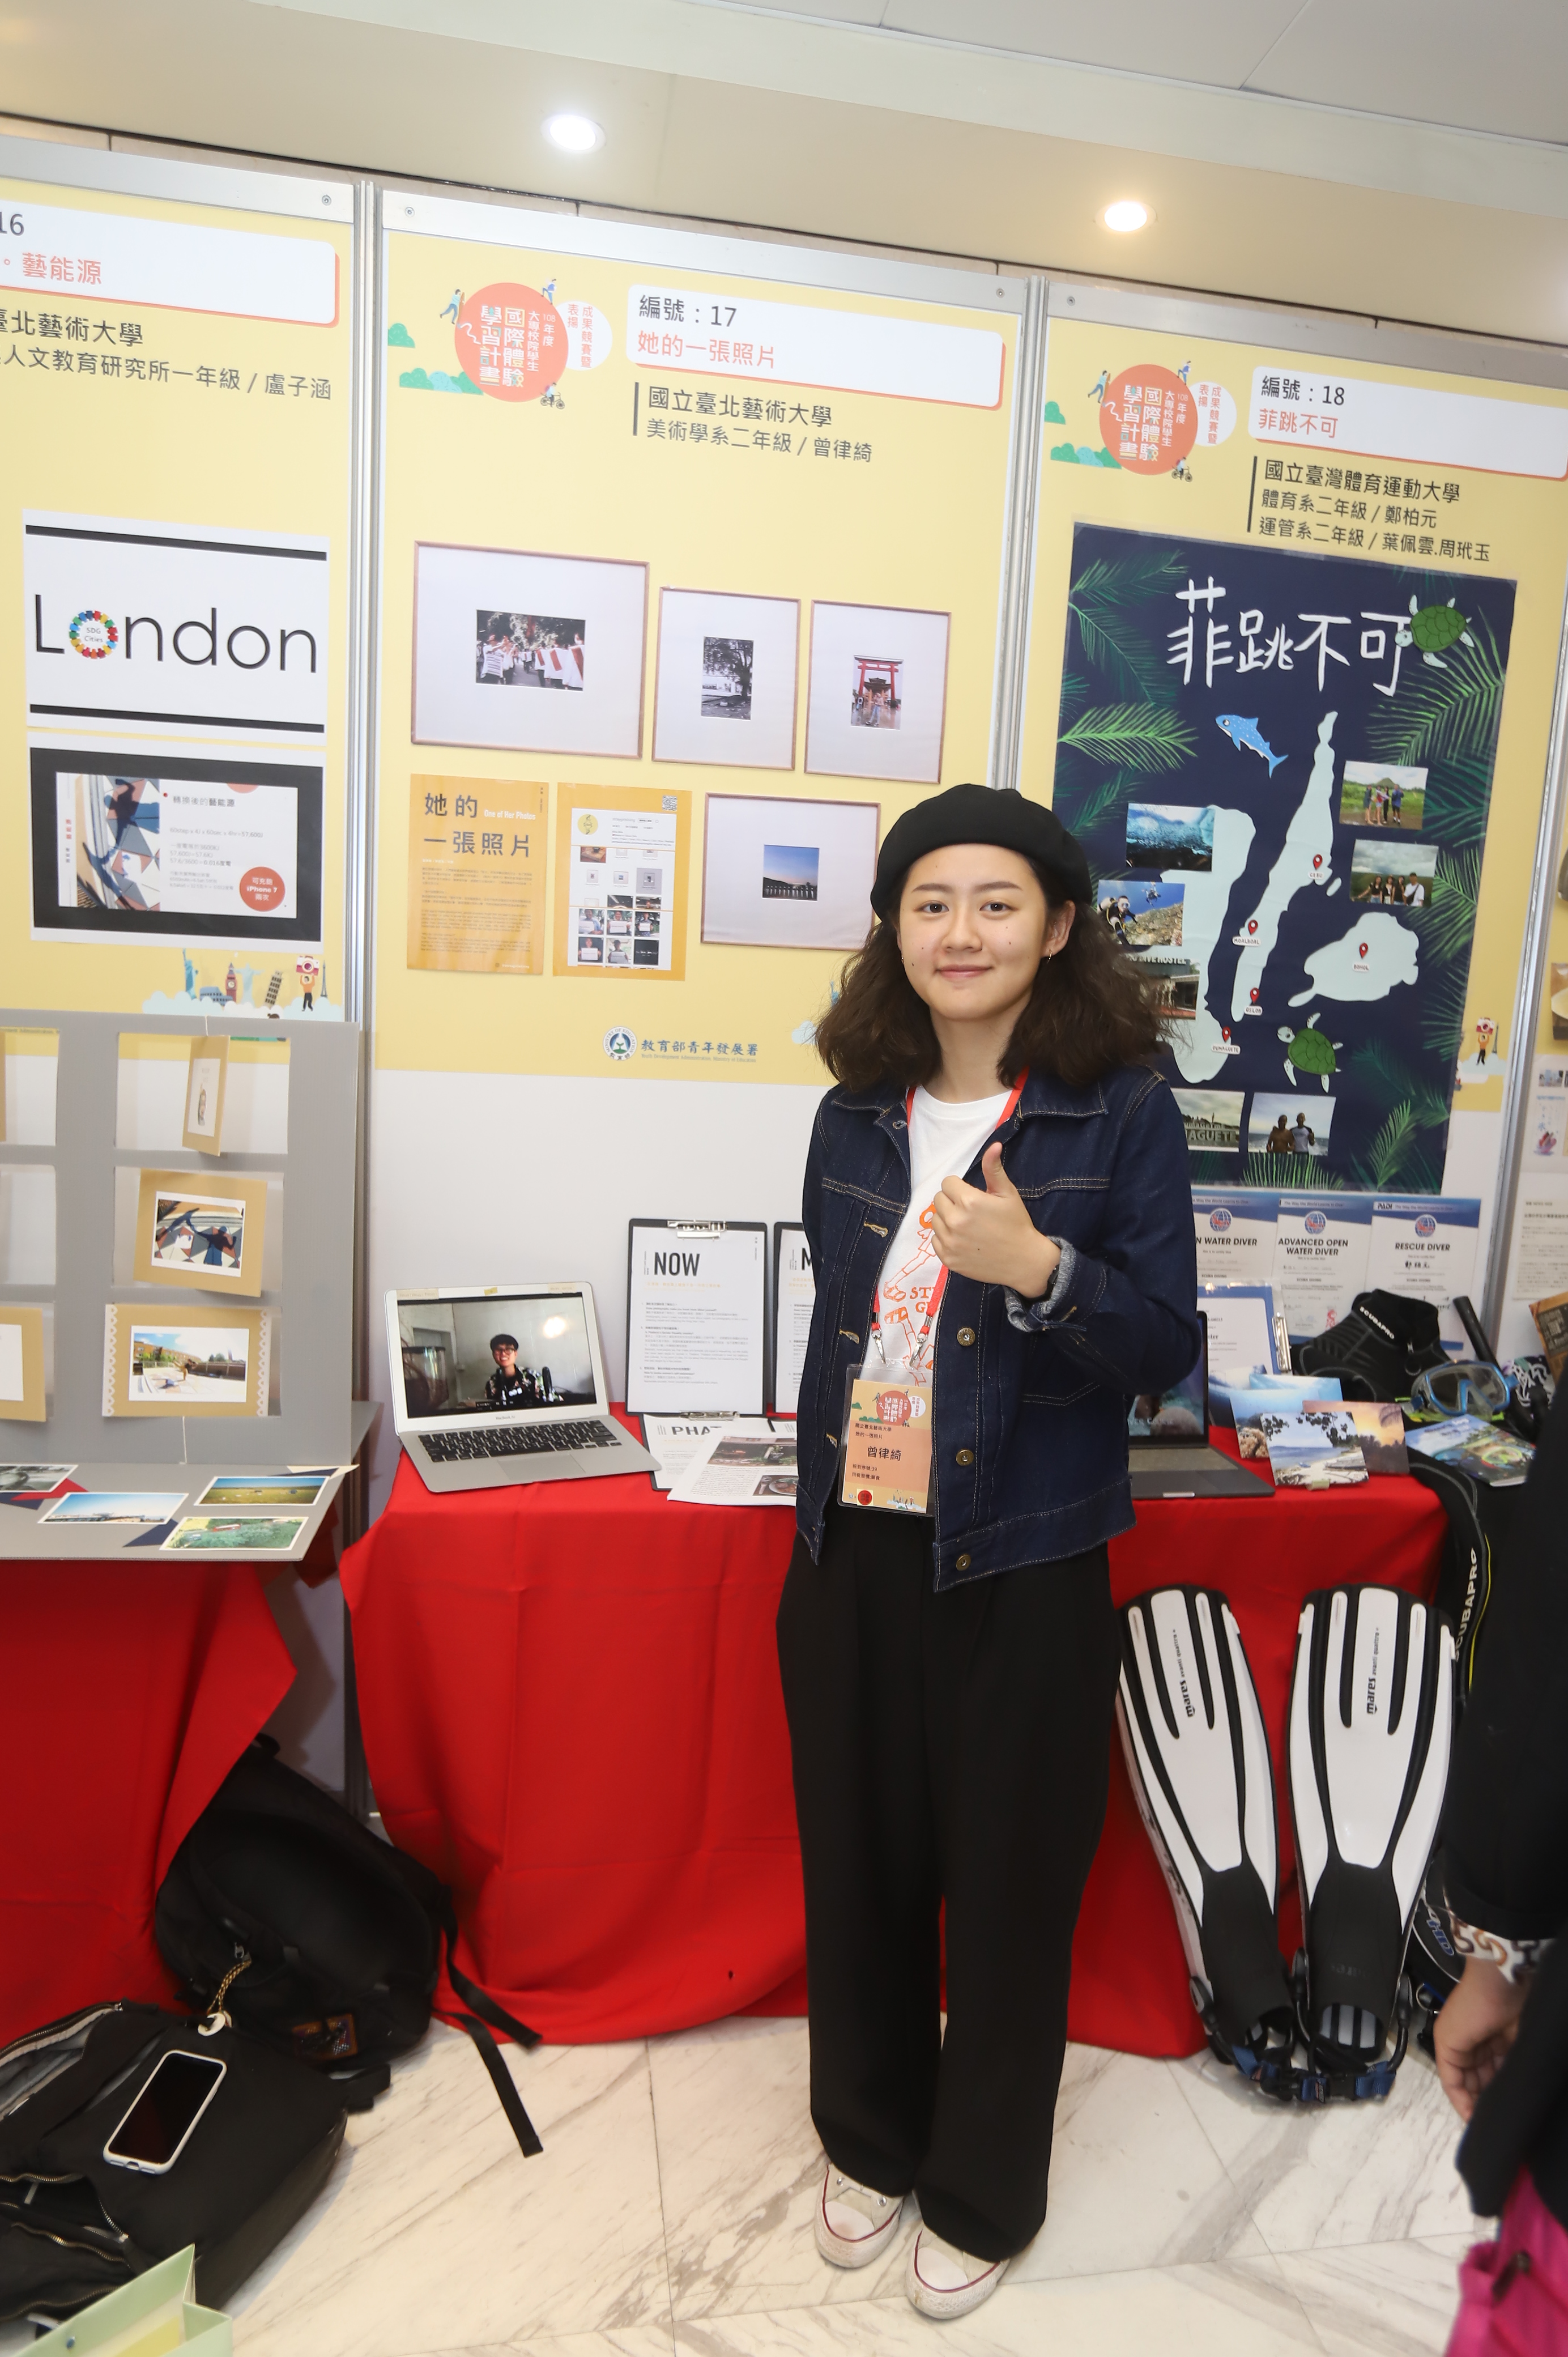 曾律綺在成果競賽攤位泰國4位女性受訪者照片及展示手工錶框